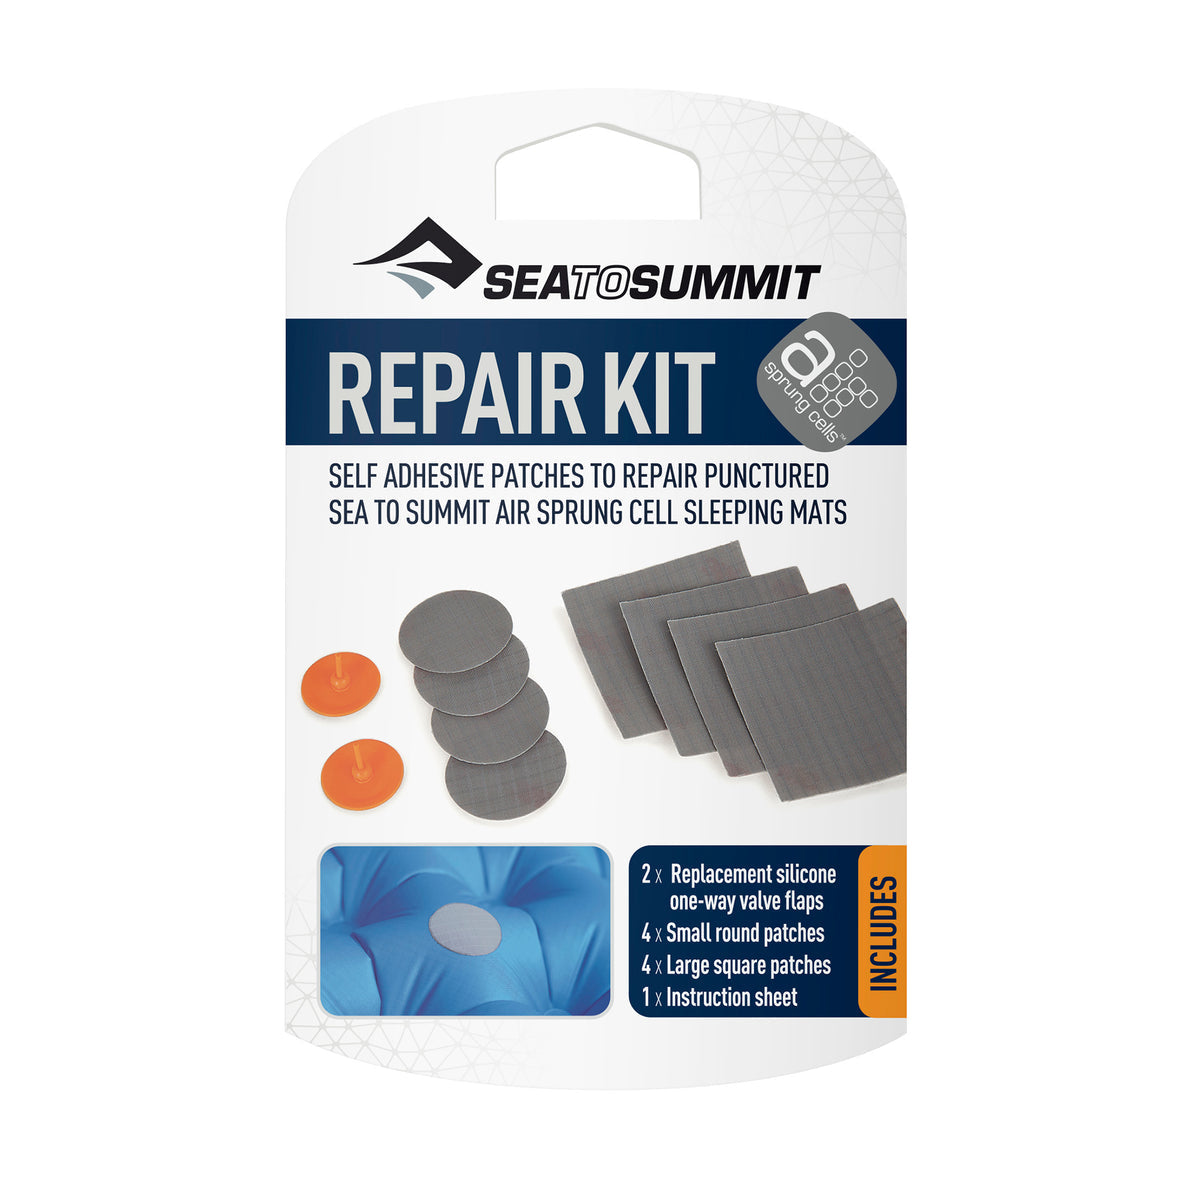 Sea to Summit Air Mat Repair Kit for Air Sprung Cell Sleeping Mats